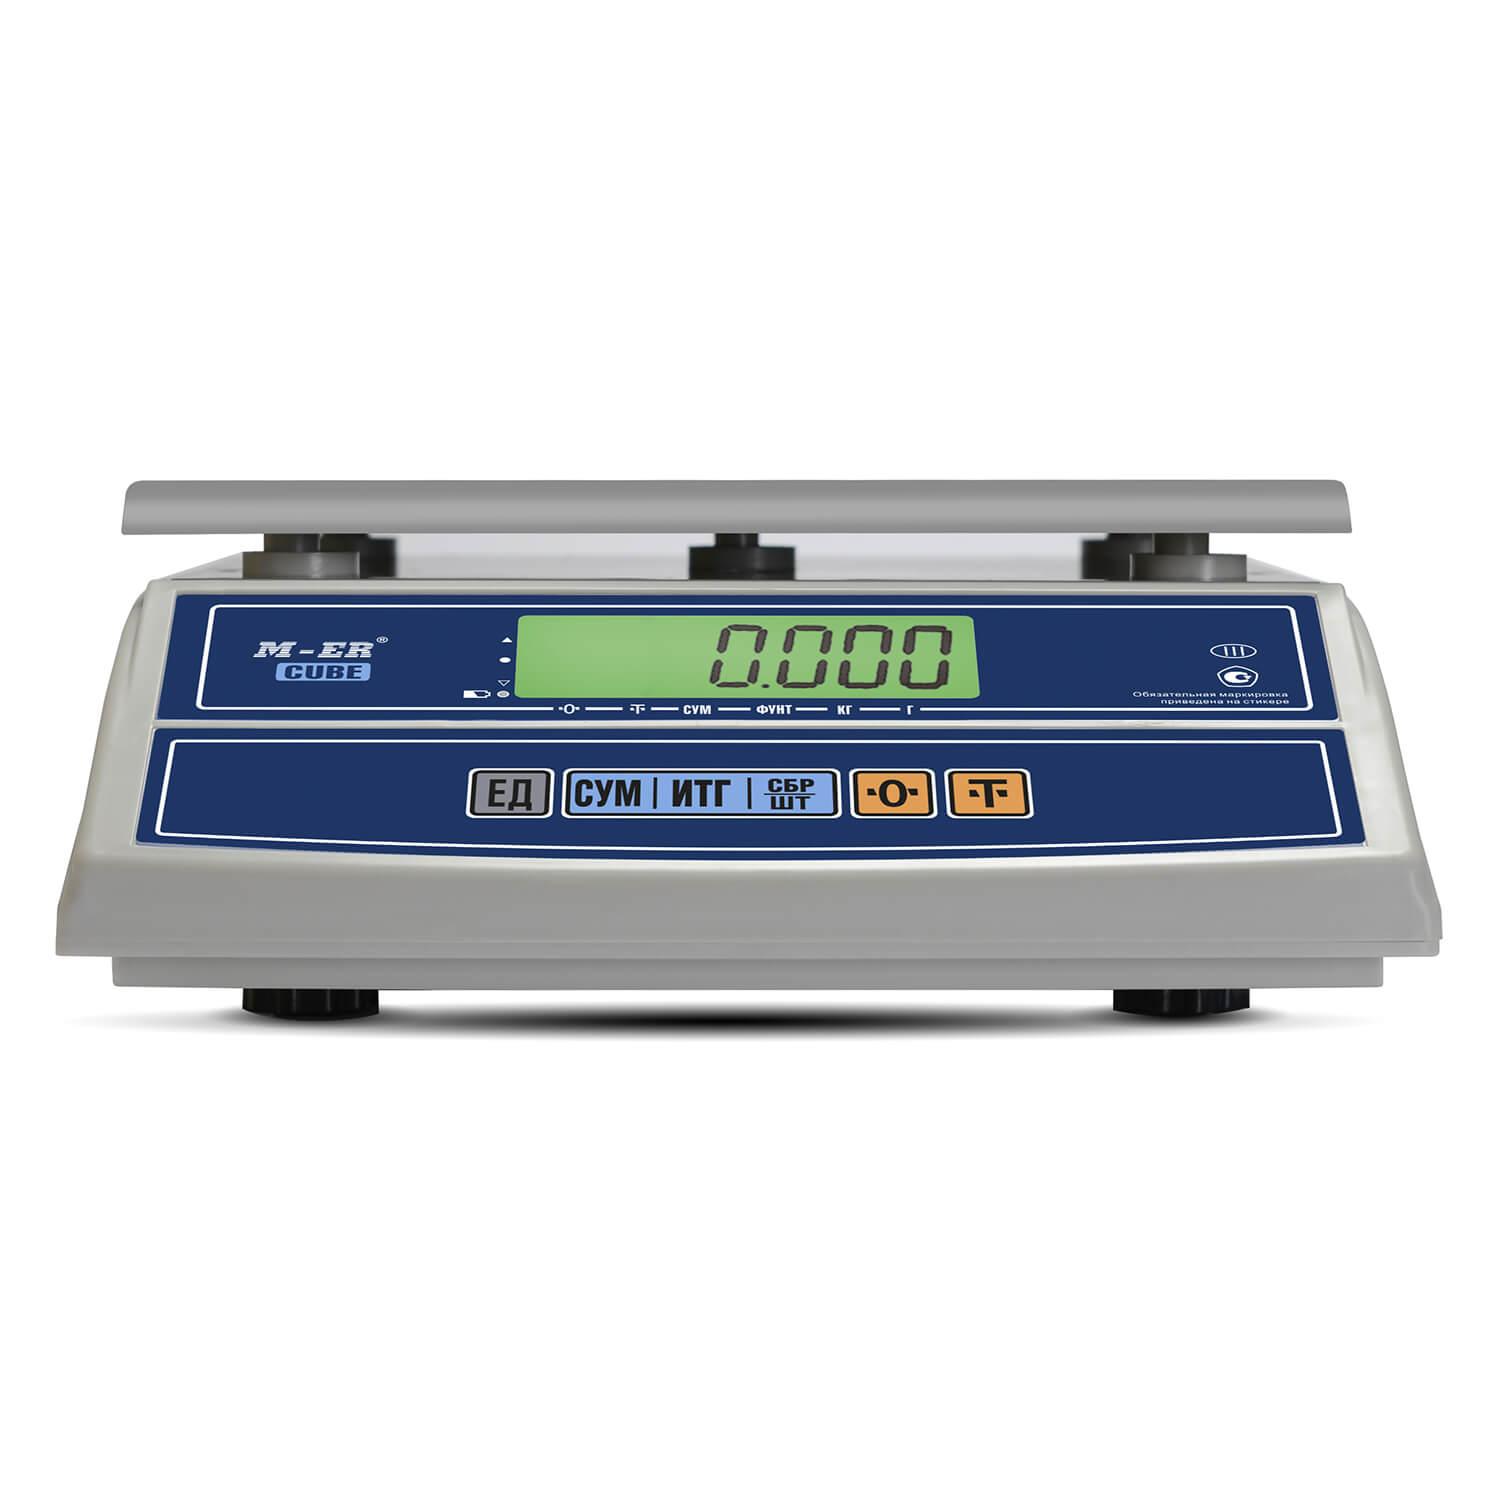 Фасовочные настольные весы M-ER 326 AF-6.1 "Cube" LCD RS232 (3152)